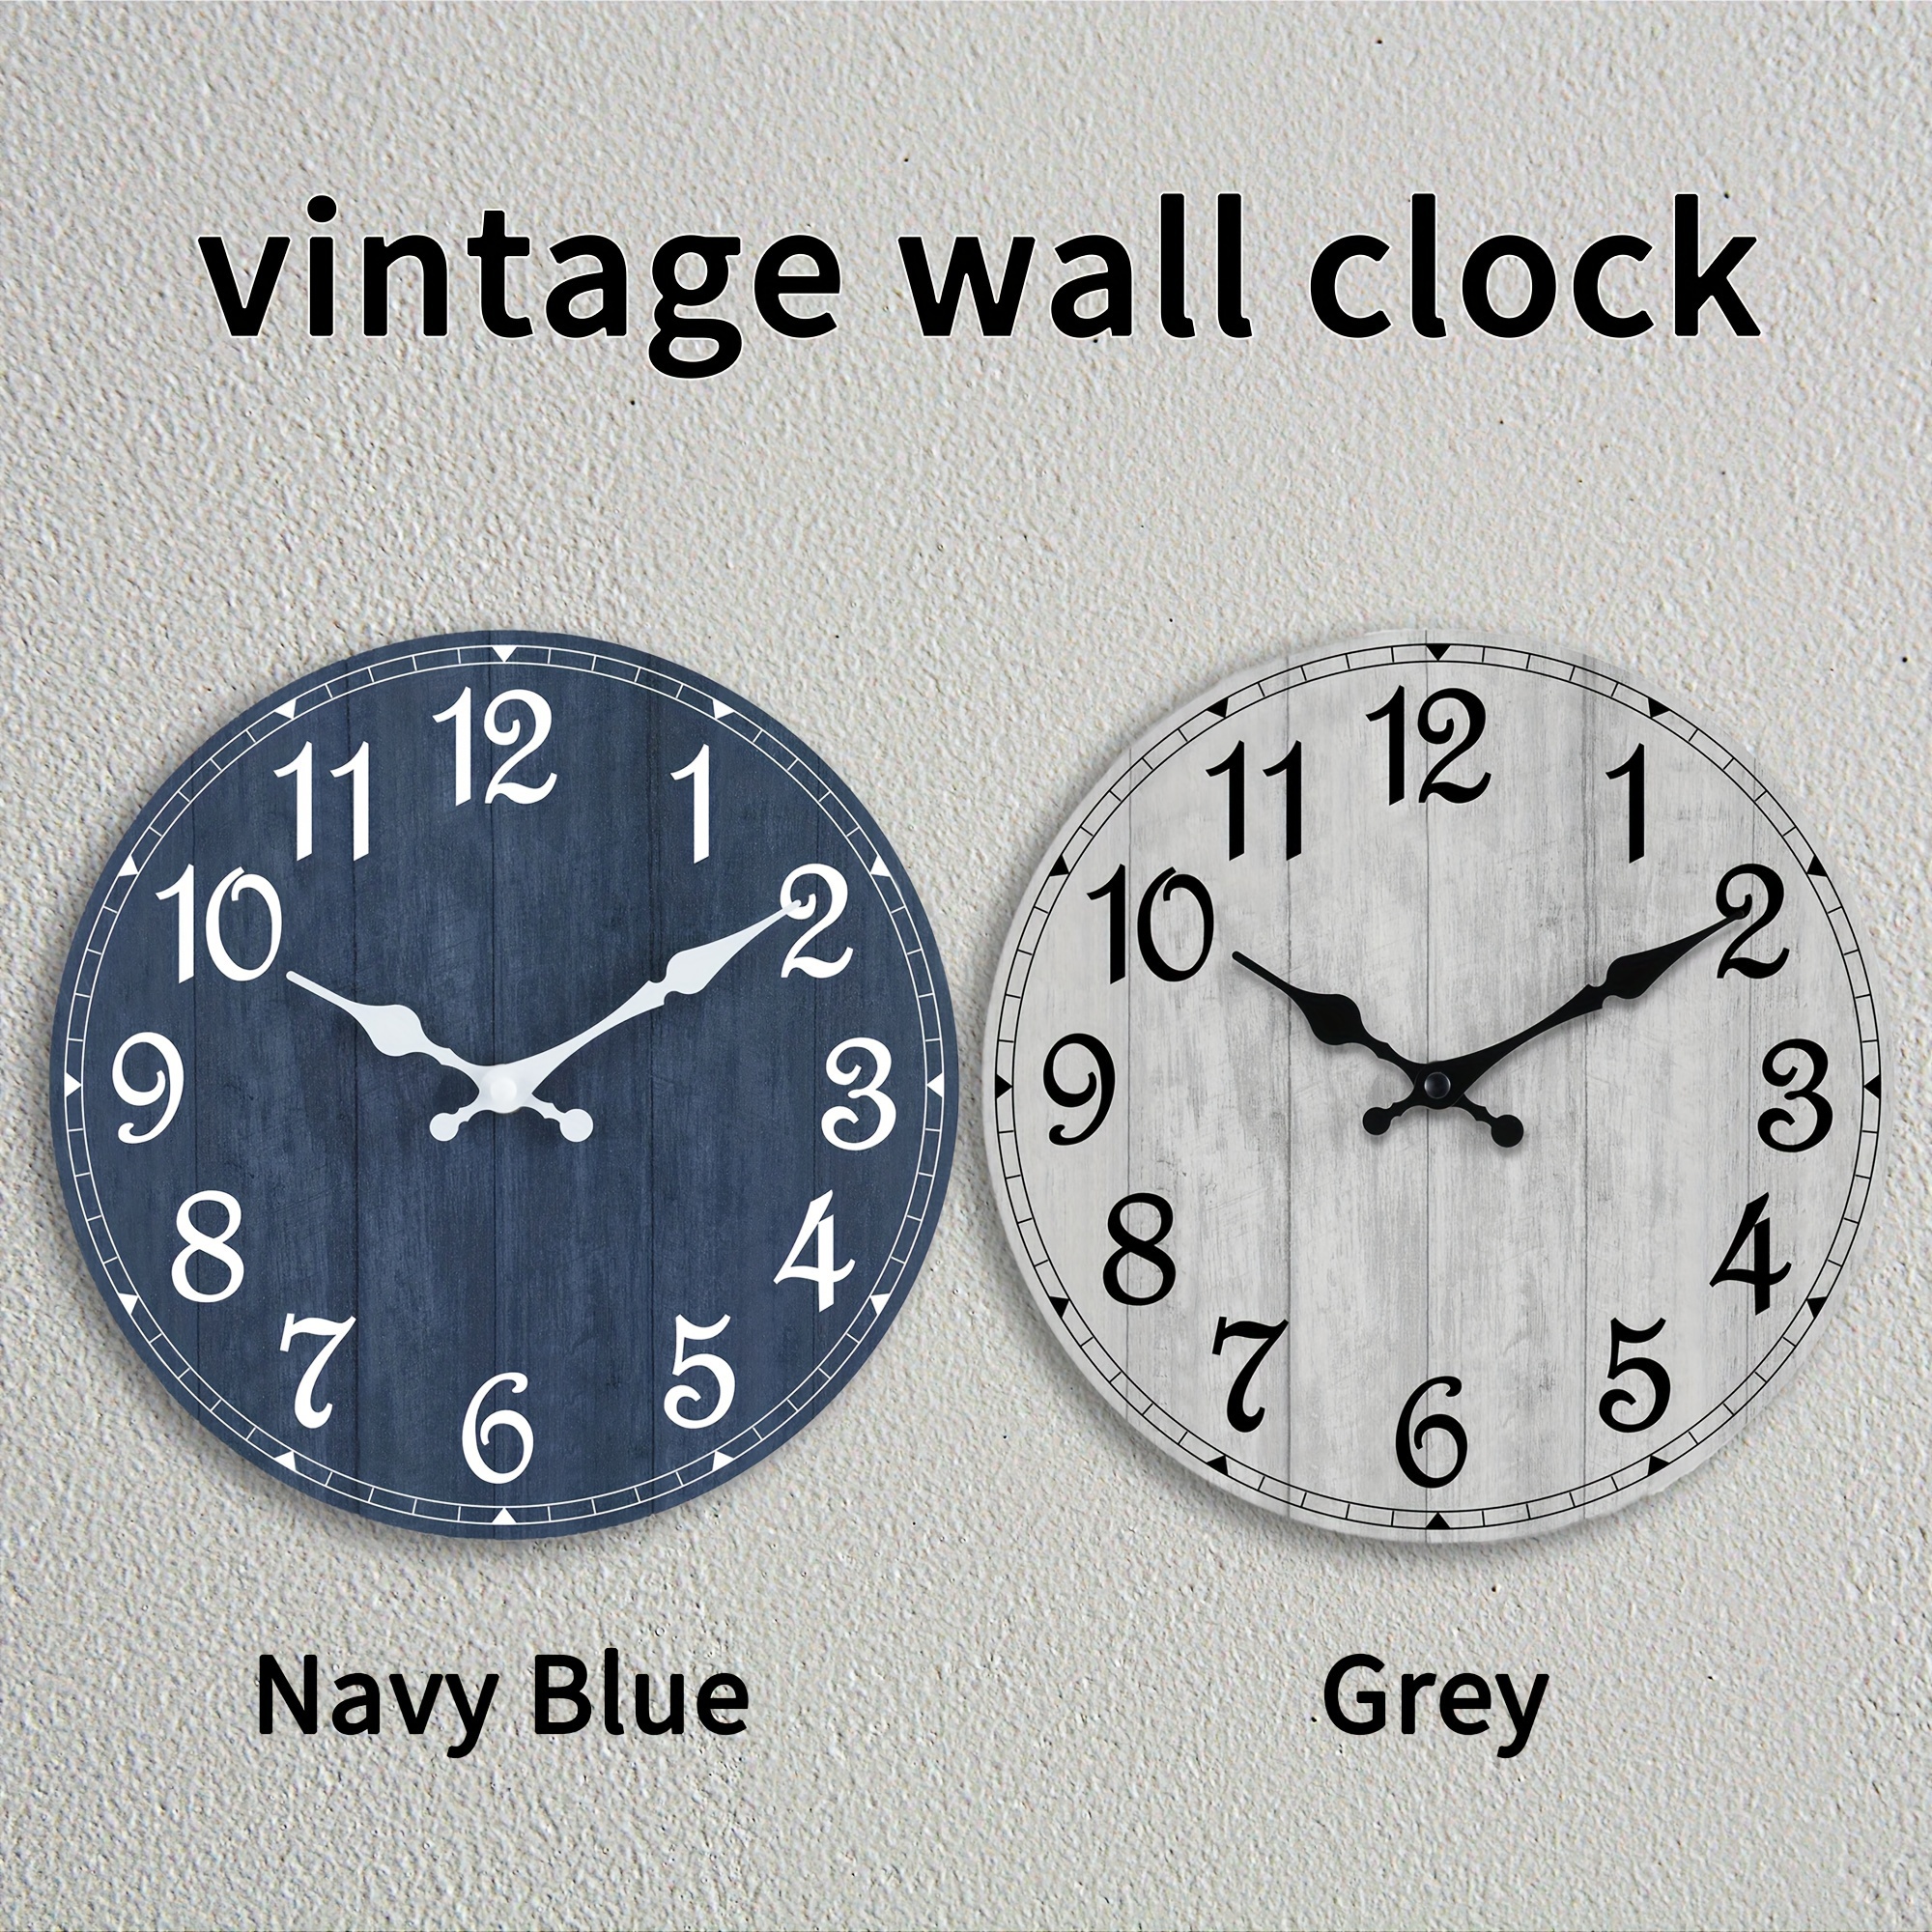 Relojes de pared Silenciosos Movimiento sin tictac Decoración de pared  Hogar/Oficina/Hotel/Bar/Restaurante/Aula Relojes (Plata)